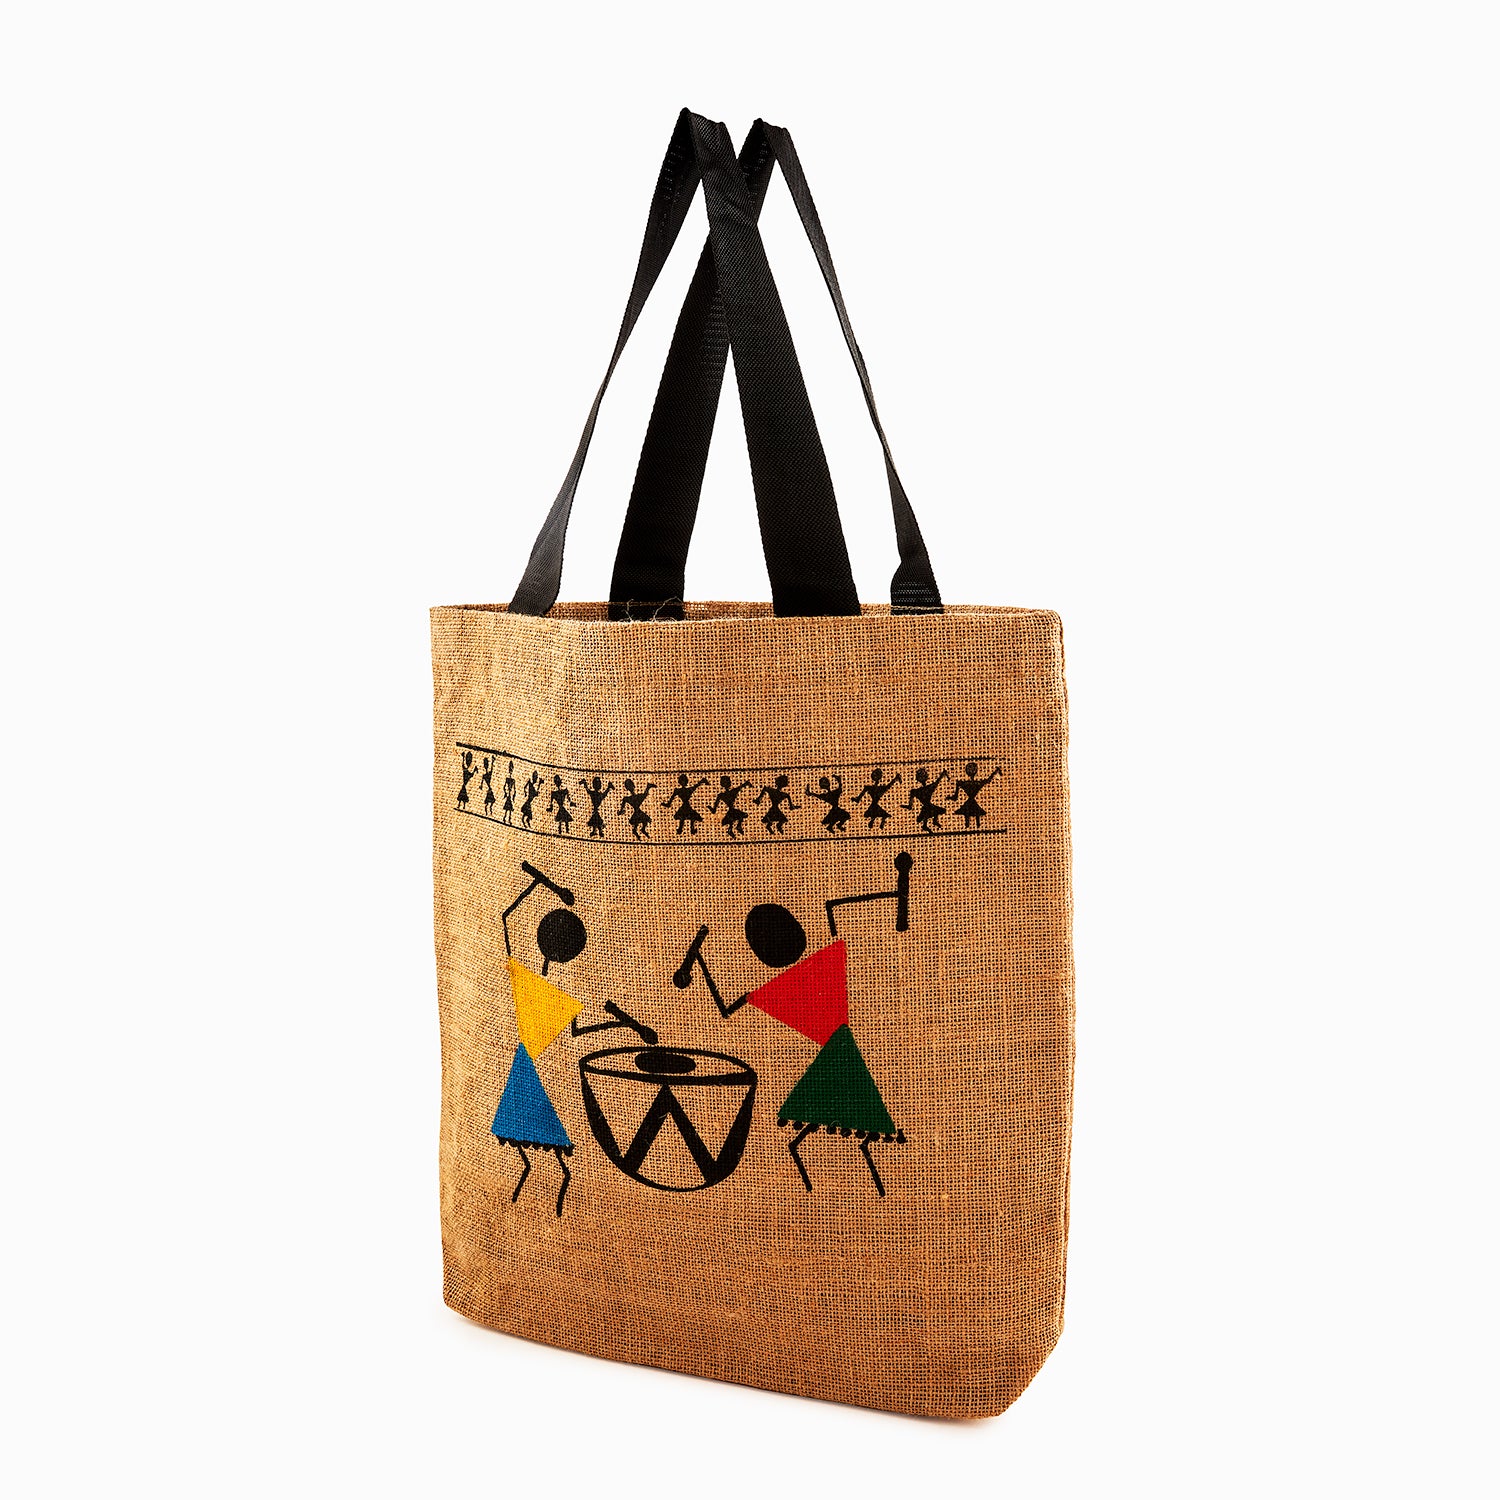 Printed Jute Bags UK | Bespoke Custom Design or Branding